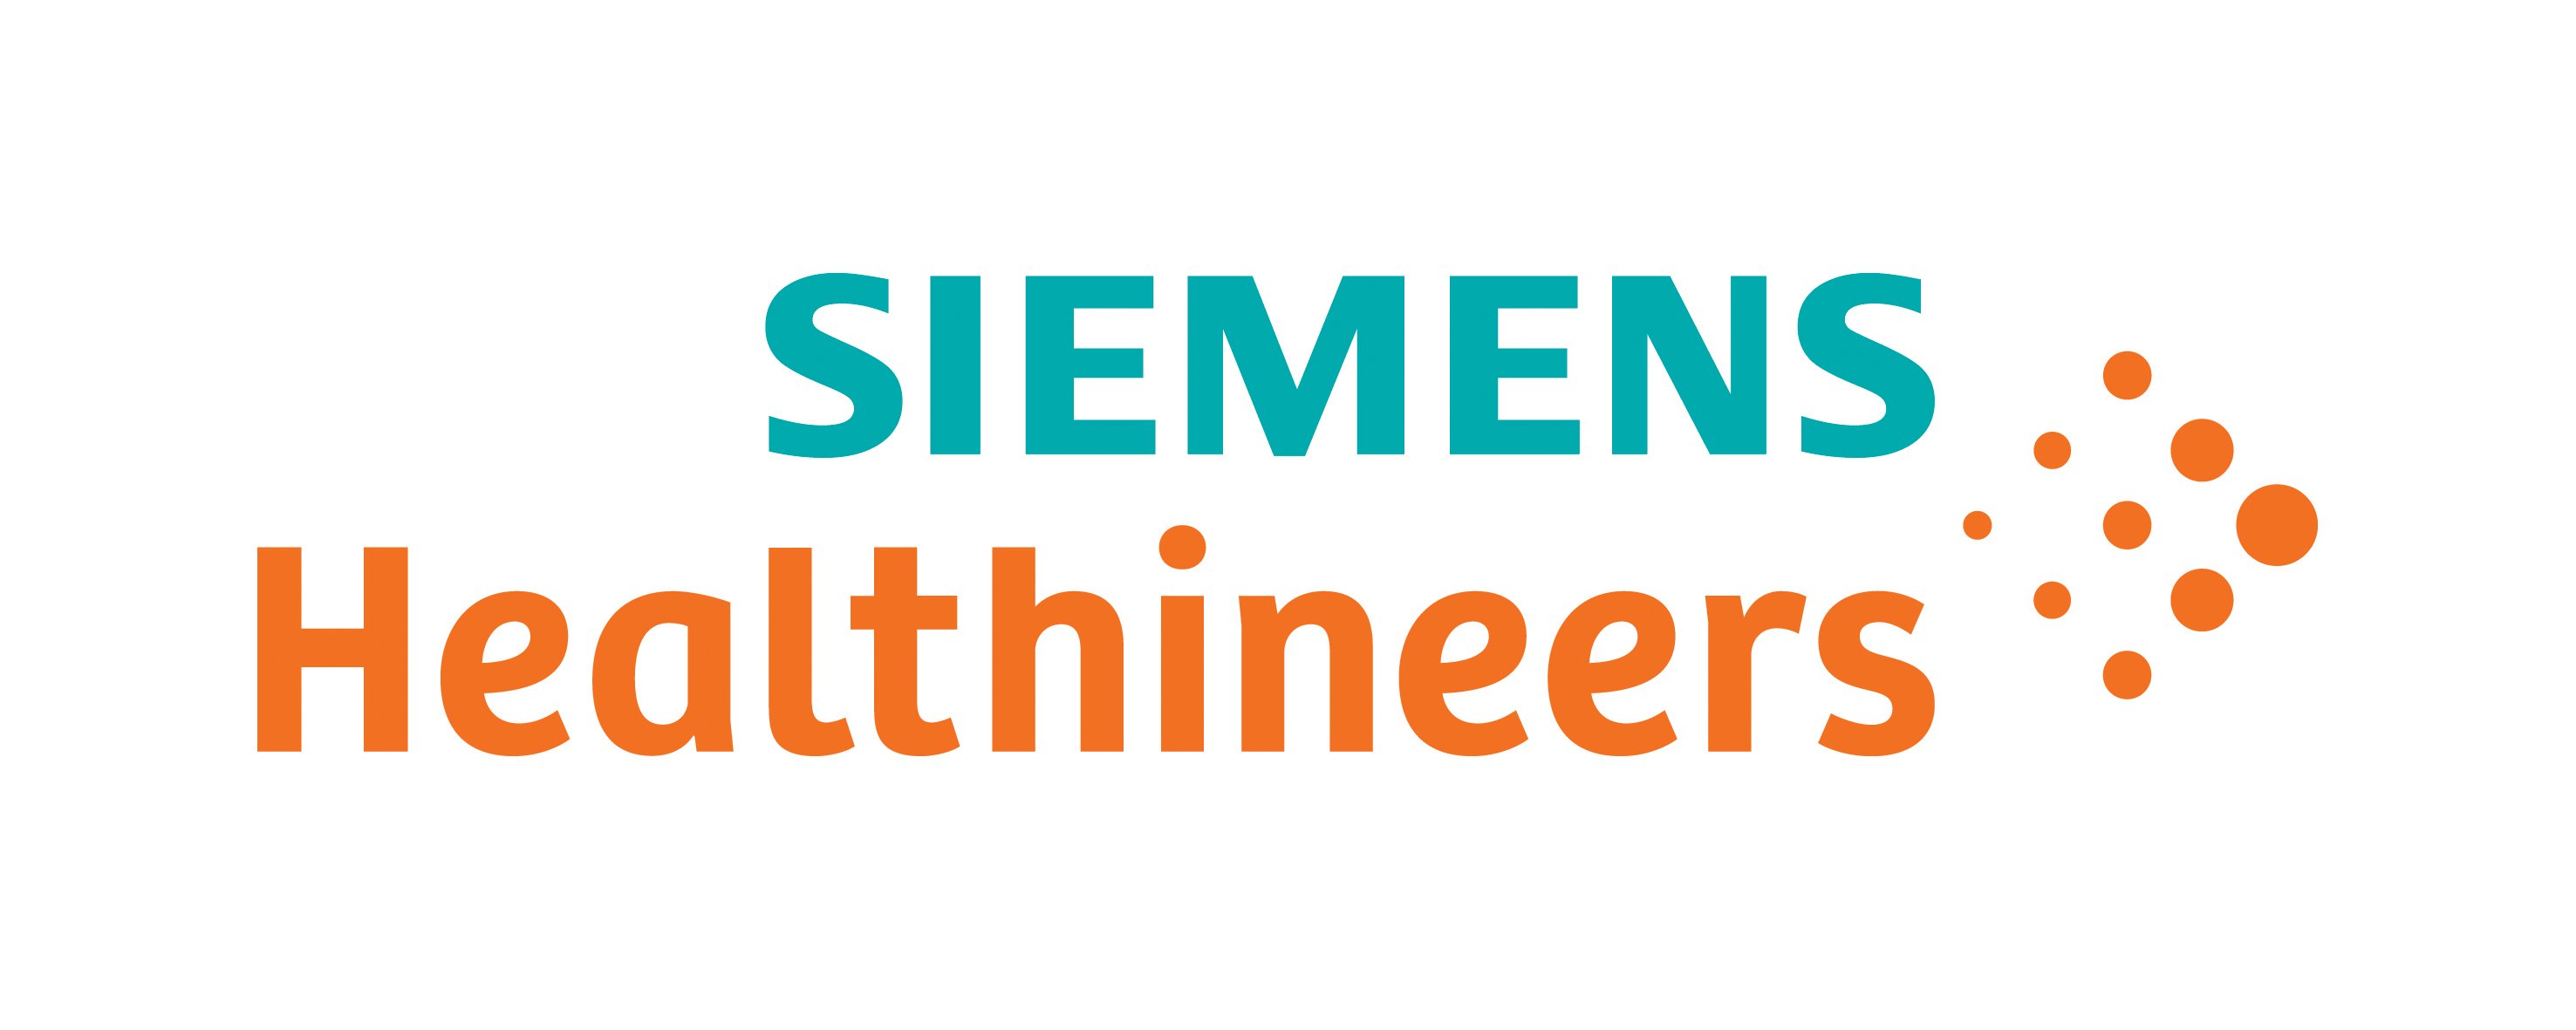 Zoeken Voorbeeld Installatie Siemens Healthcare Introduces New Siemens Healthineers Brand Name | Imaging  Technology News